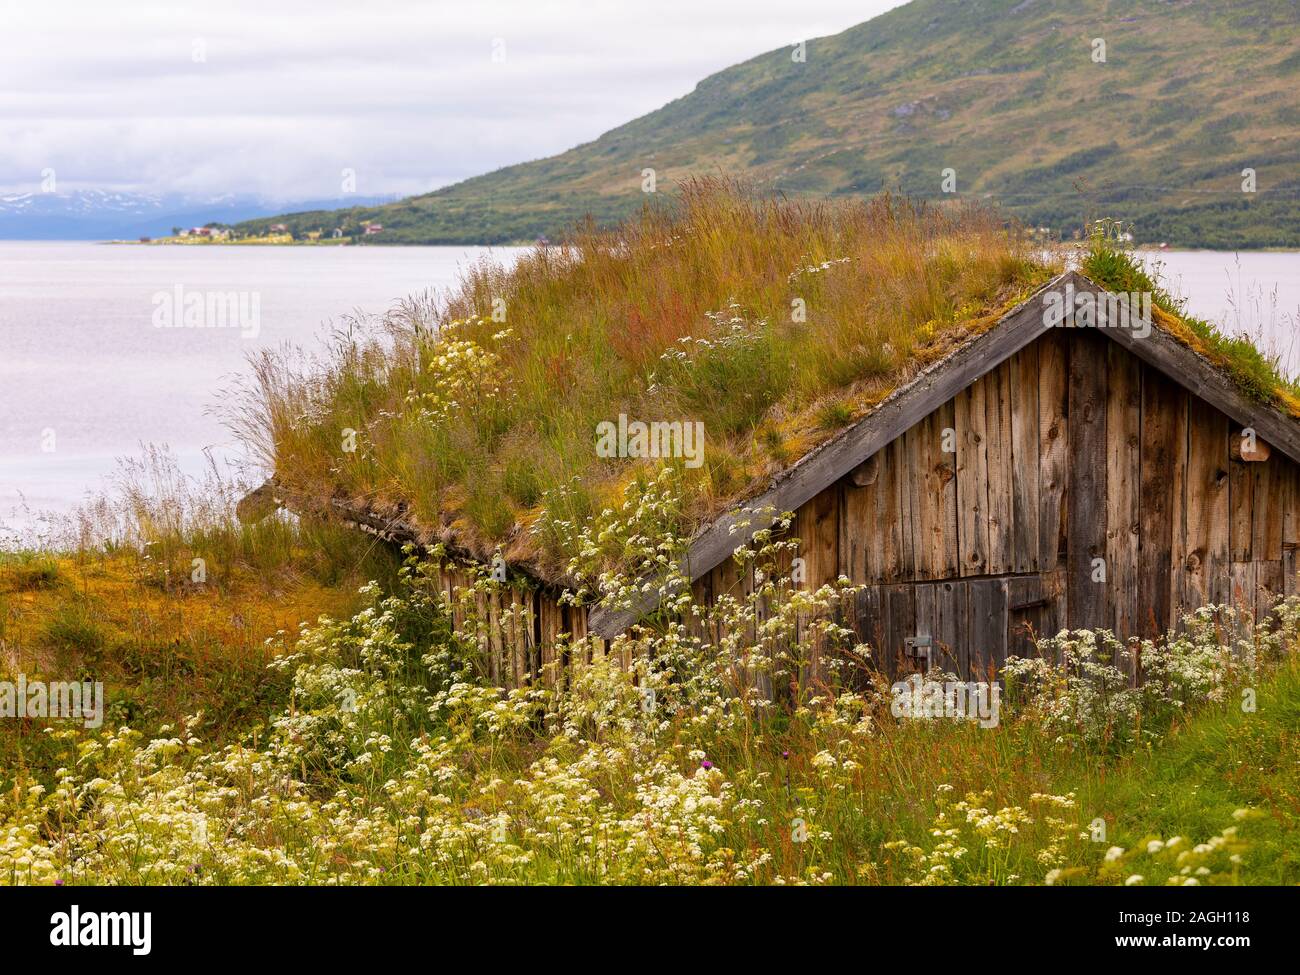 STRAUMSBUKTA, INSEL KVALØYA, Troms County, NORWEGEN - Historisches Museum Dorf Straumen Gård mit Rasen Dach Gebäude. Sod Dach ist traditionell. Stockfoto